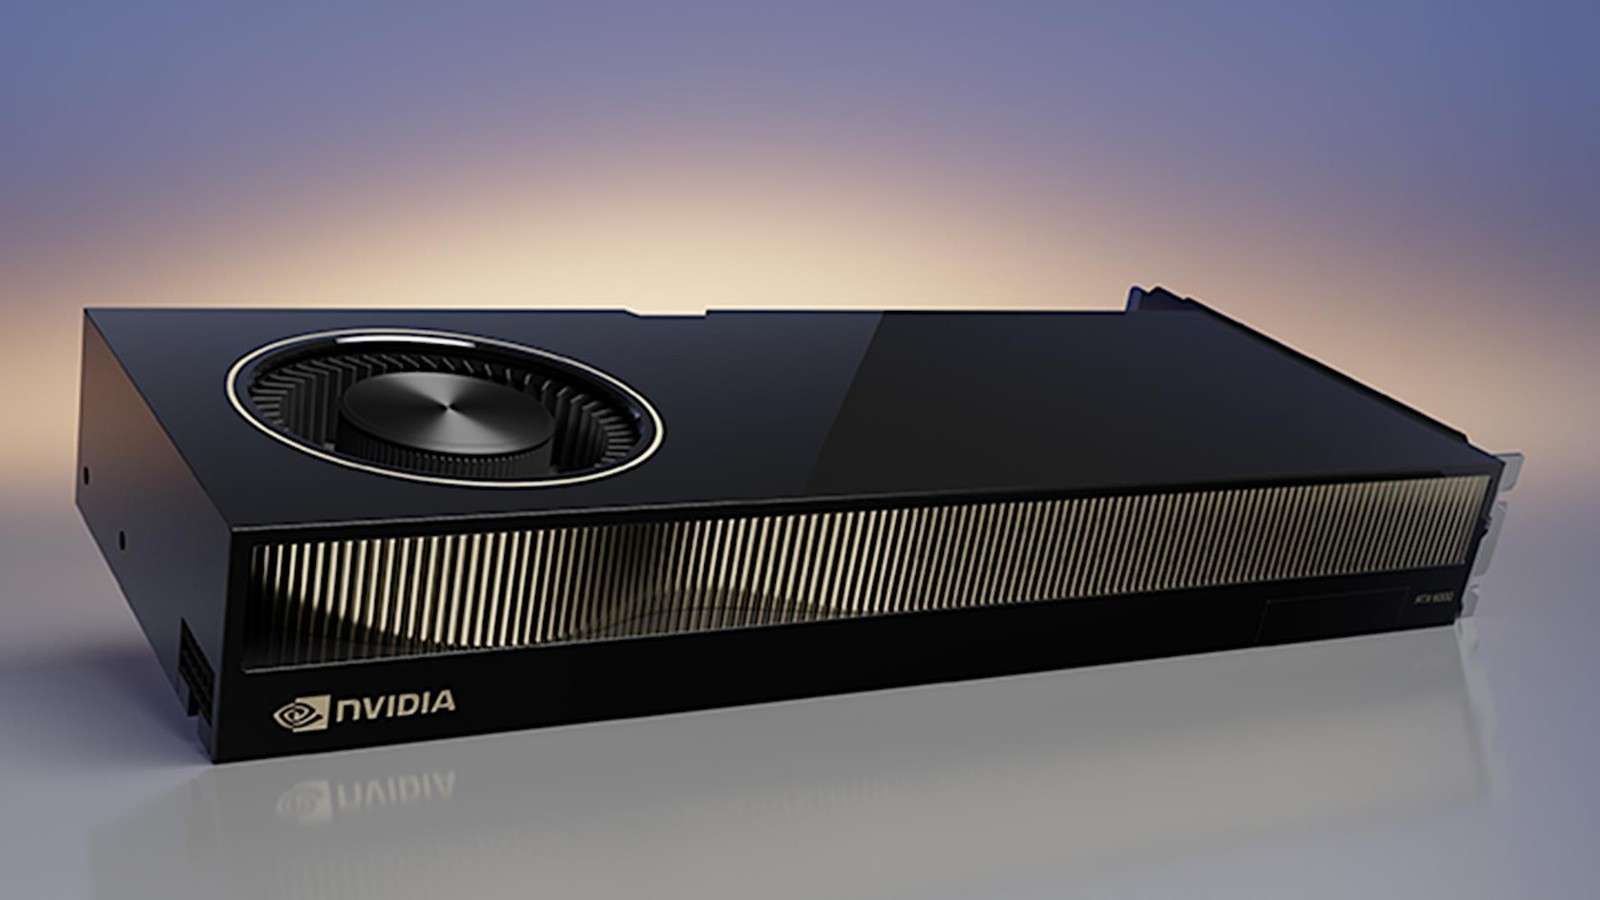 Nvidia RTX 5000 Ada